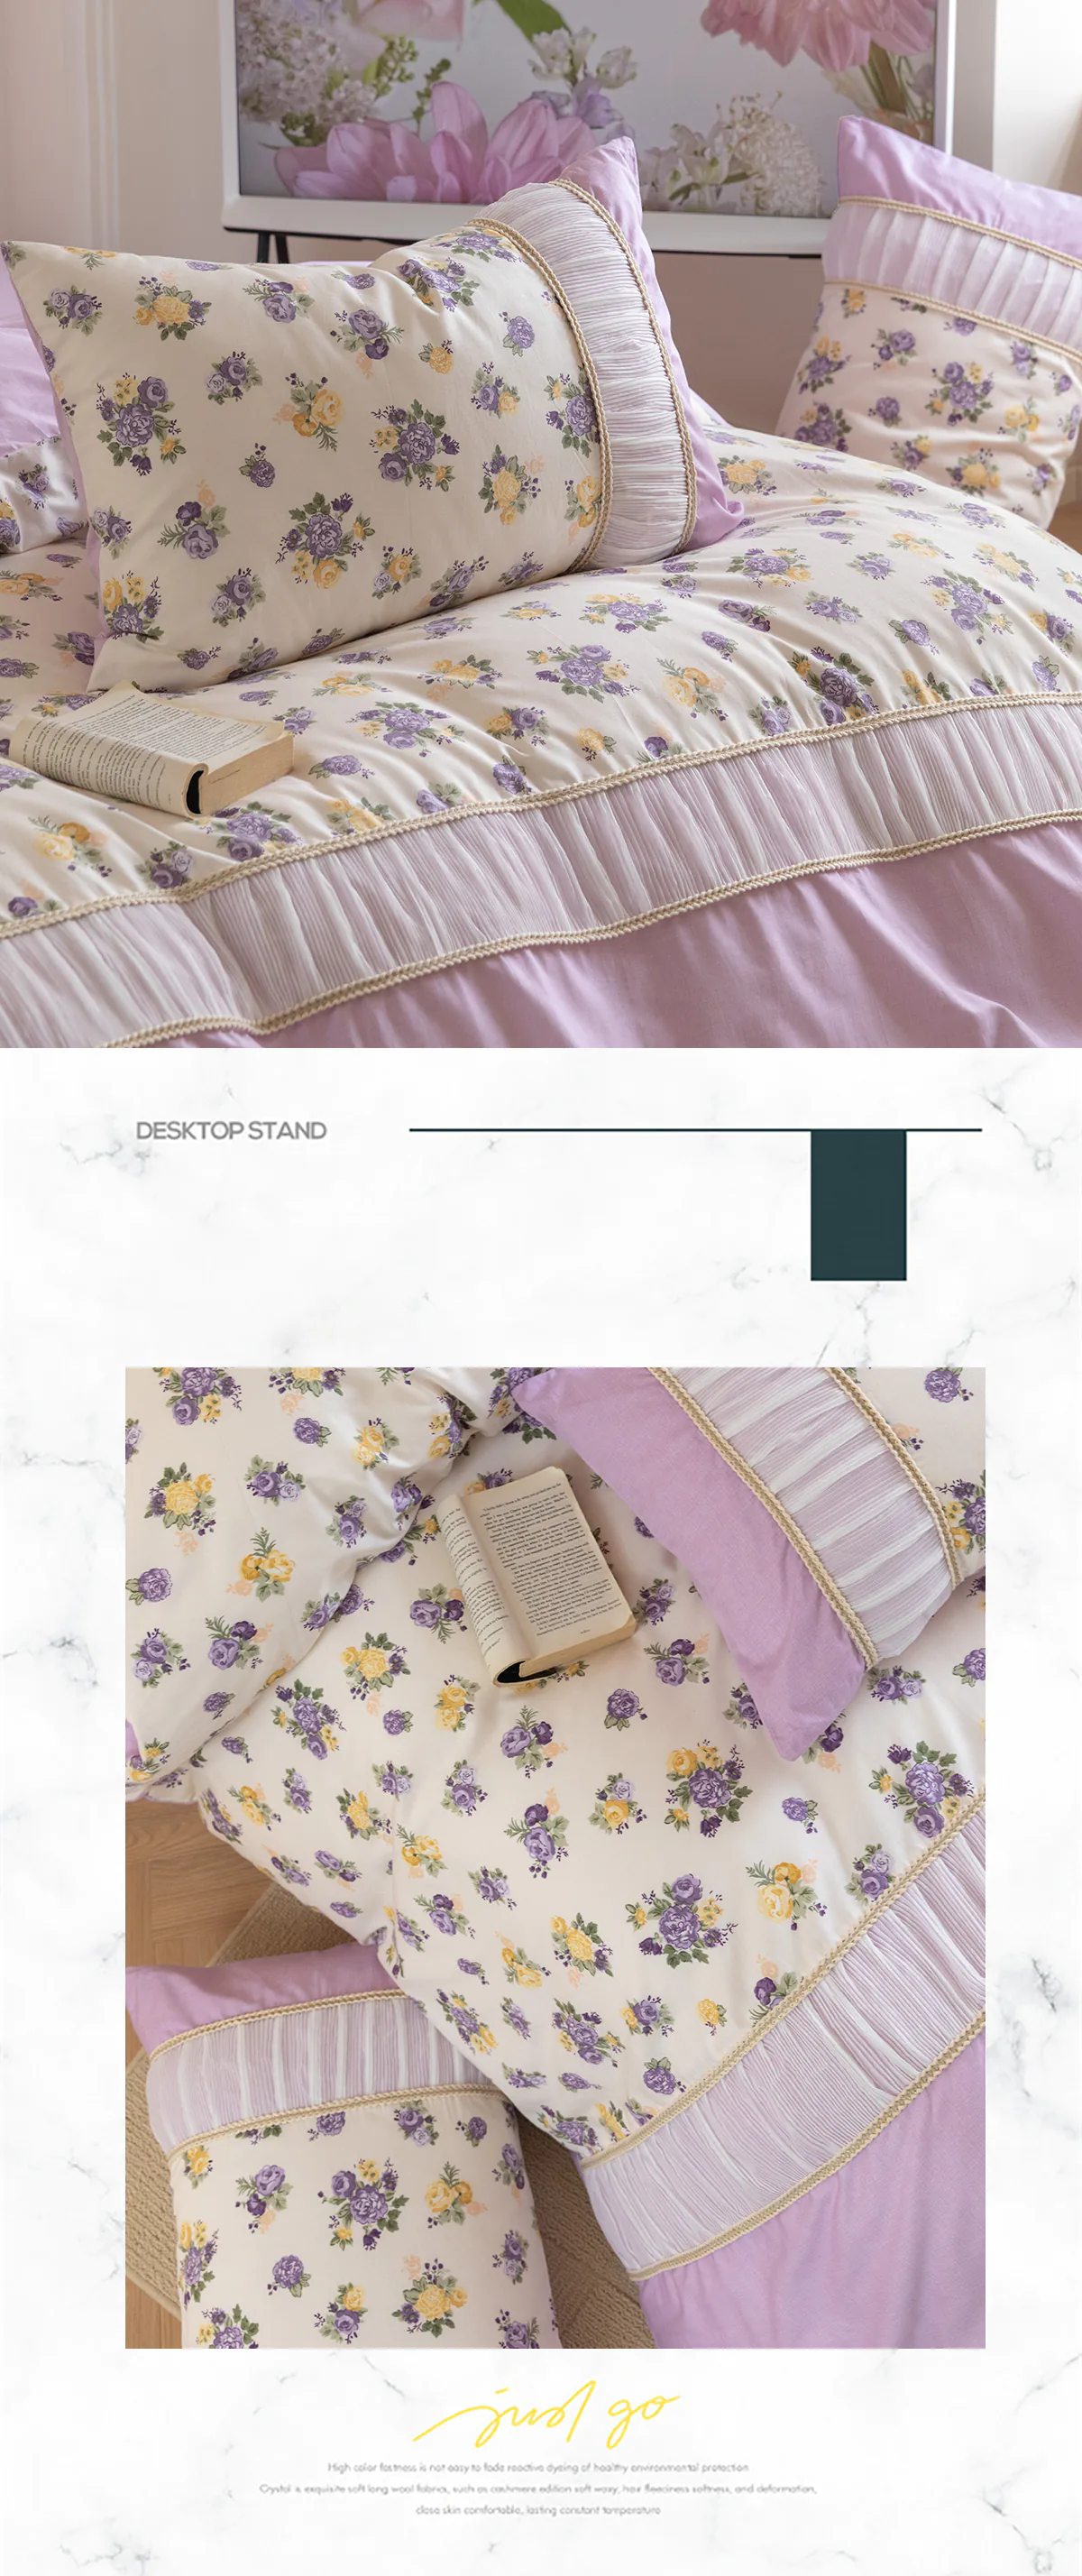 Retro-Princess-Style-100-Cotton-Floral-Duvet-Cover-Bedding-Set29